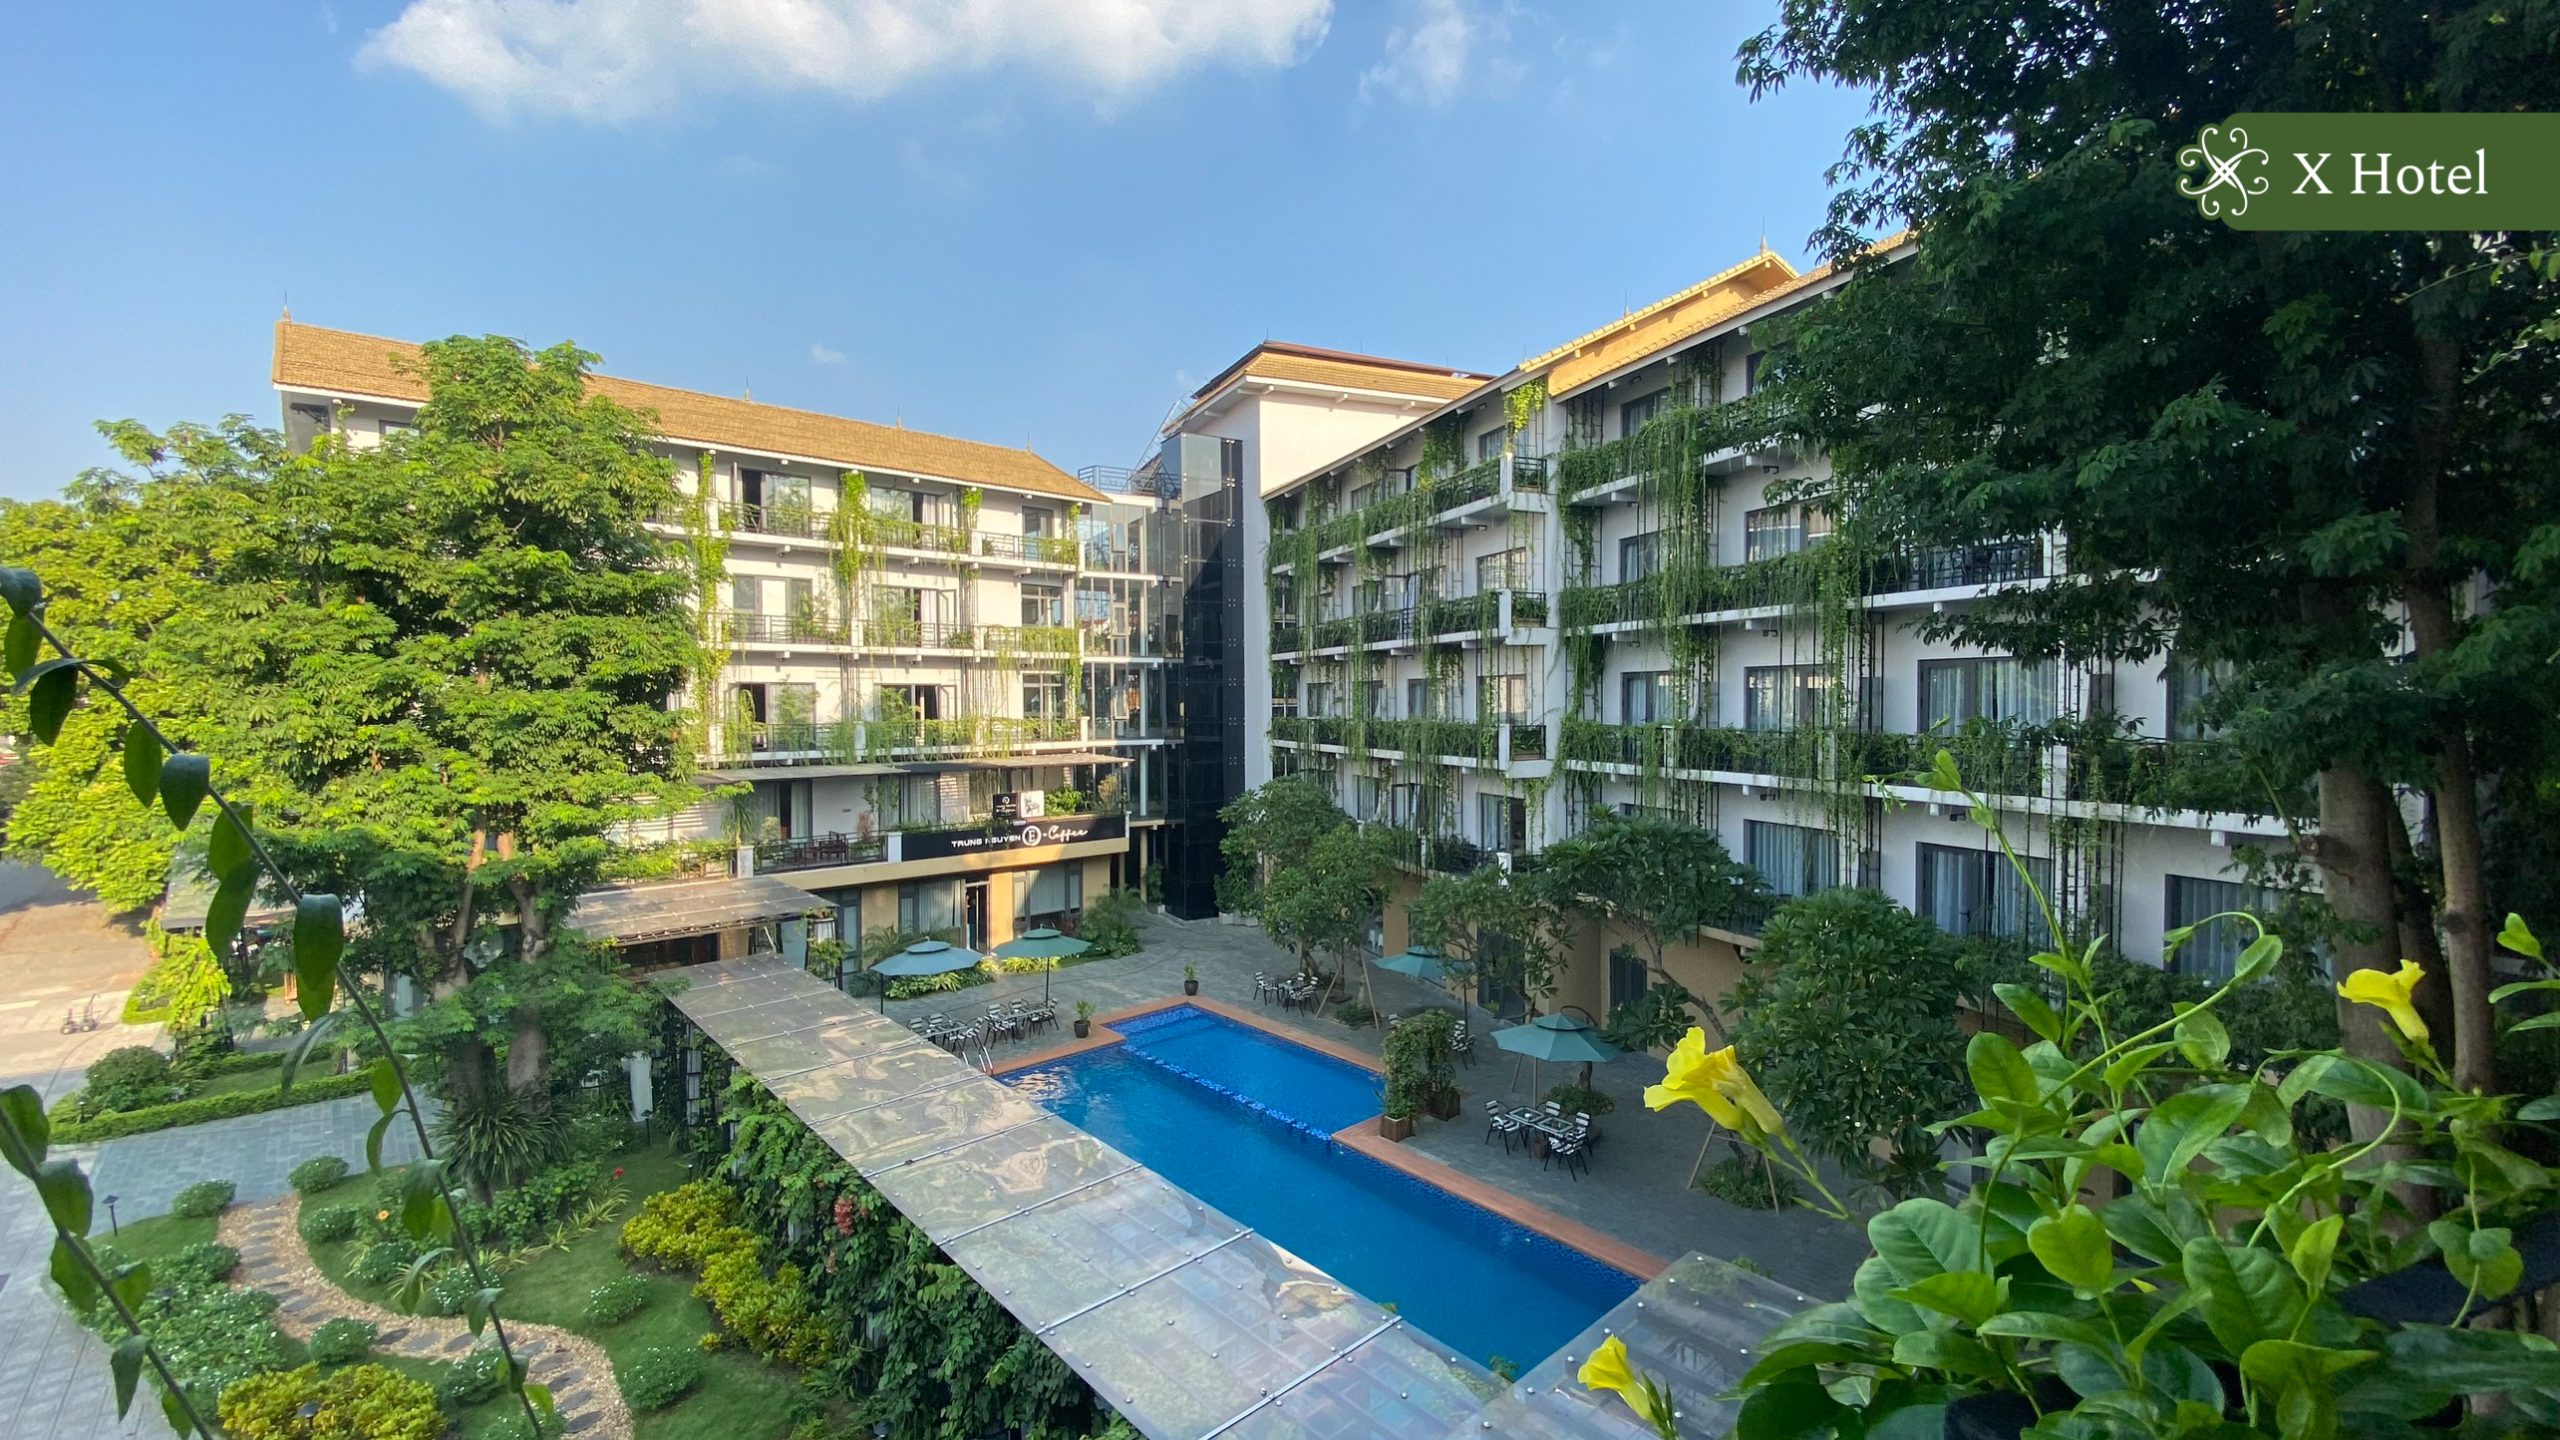 Khách sạn Thái Nguyên Xhotel với không gian xanh độc đáo